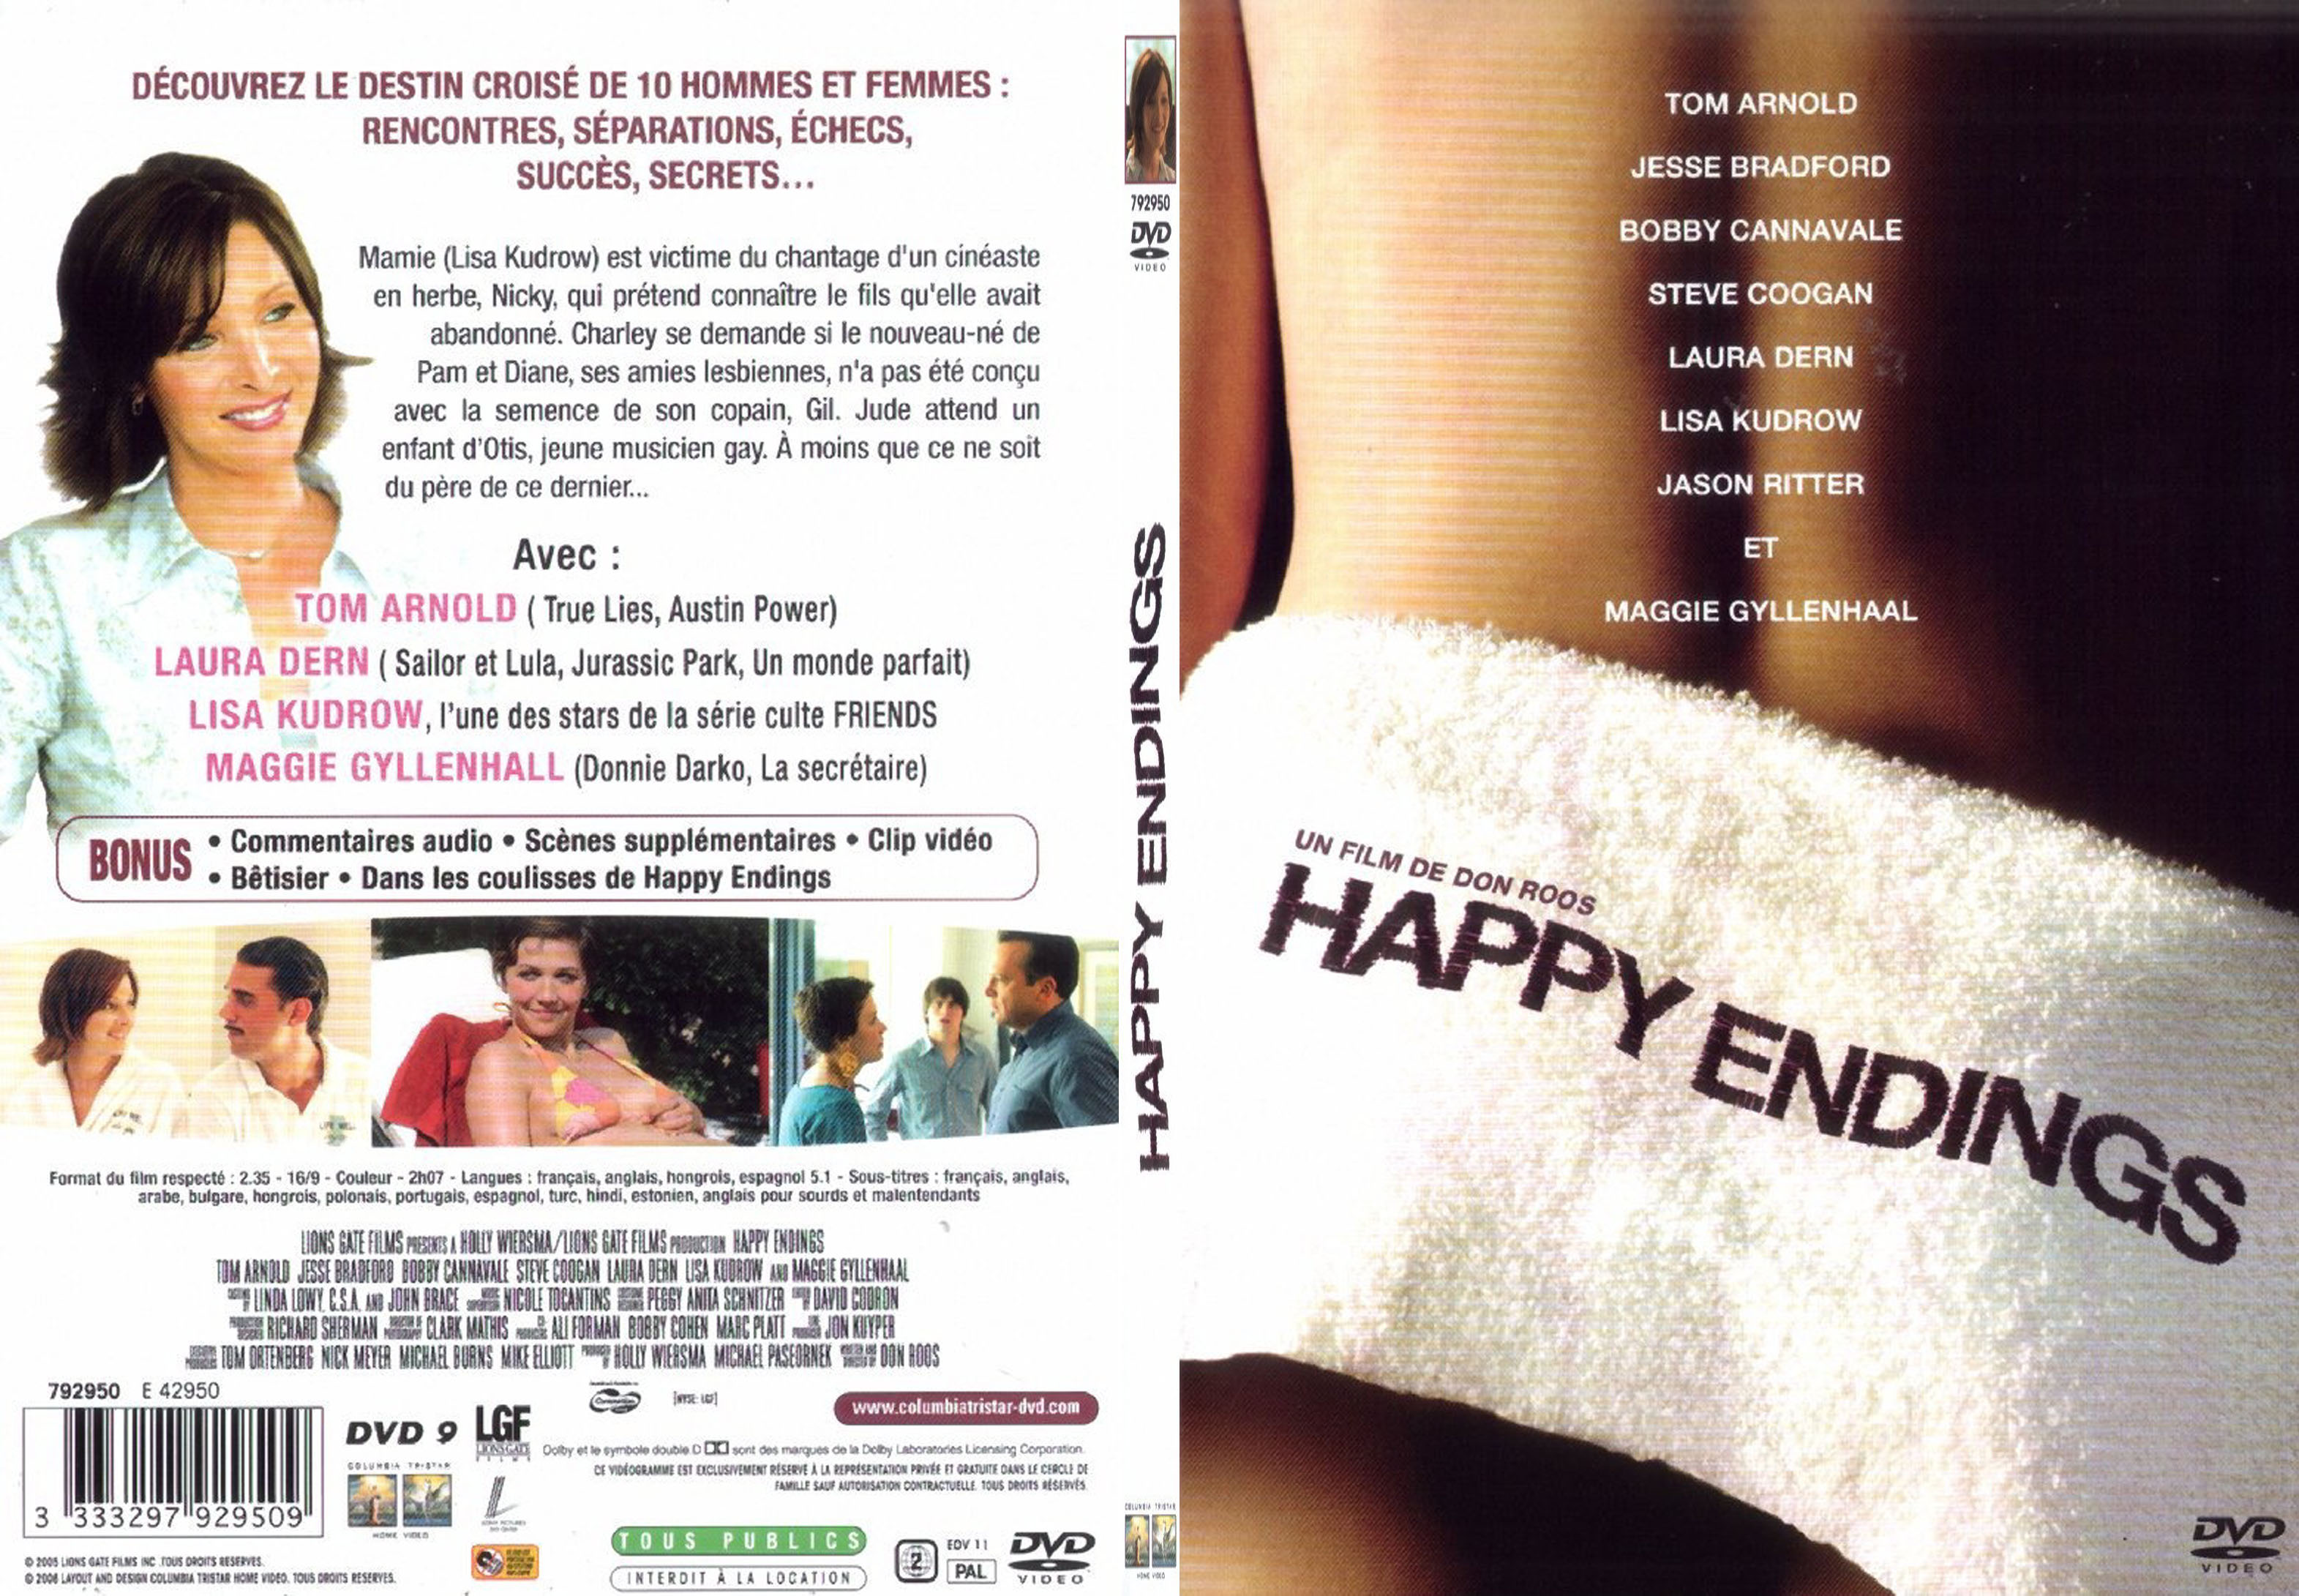 Jaquette DVD Happy endings - SLIM